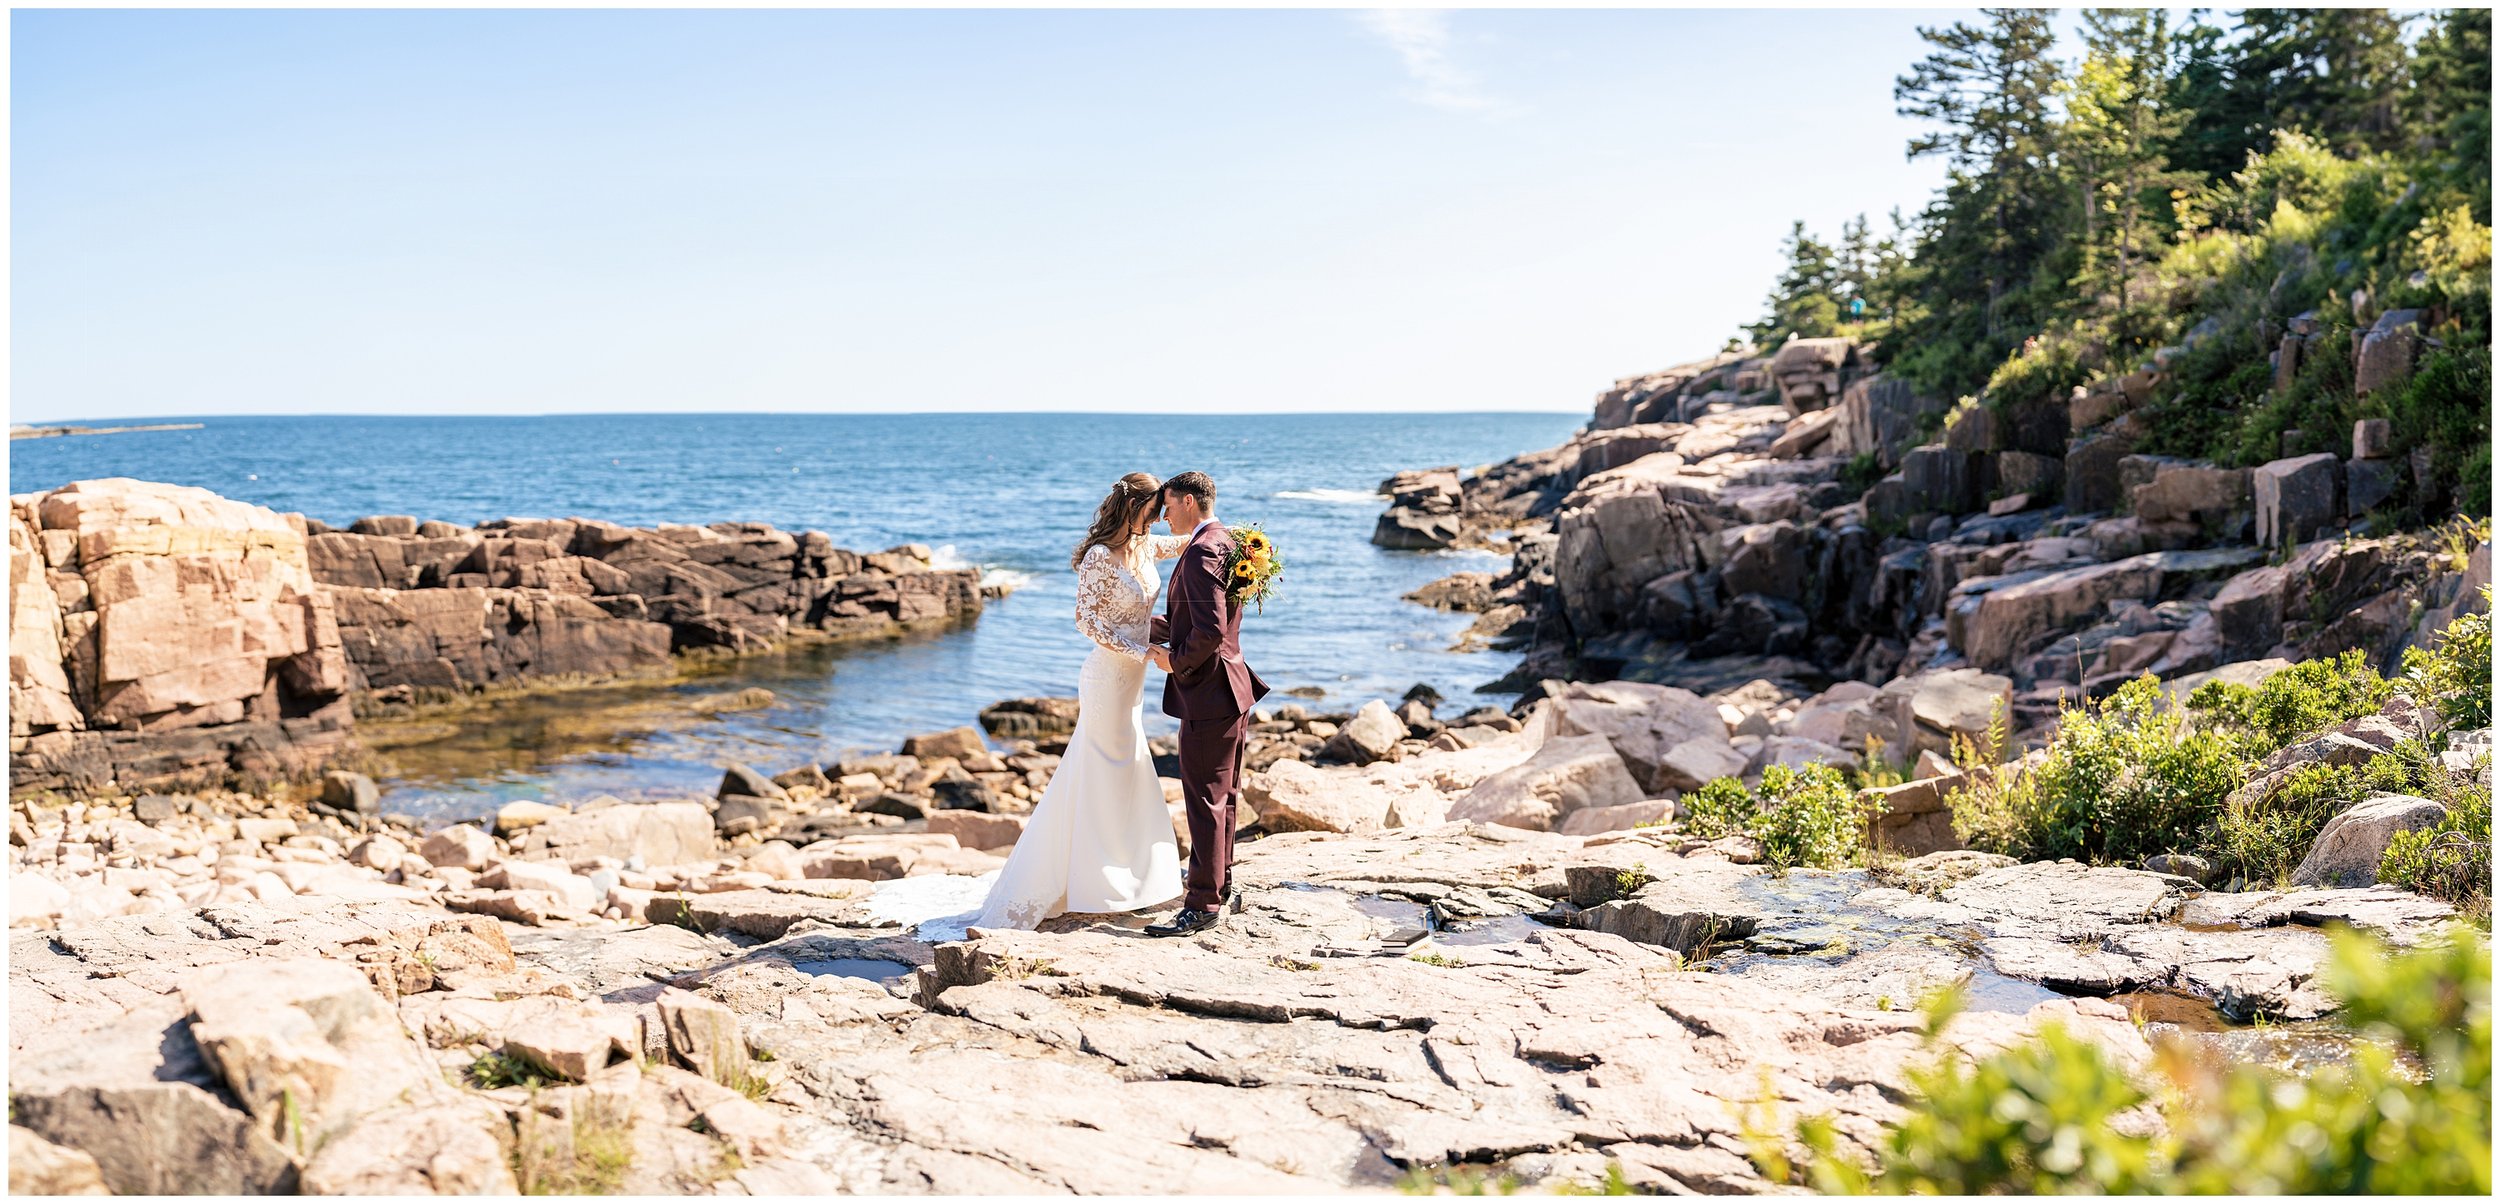 Acadia National Park Wedding Photographers, Bar Harbor Wedding Photographers, Two Adventurous Souls- 082423_0026.jpg